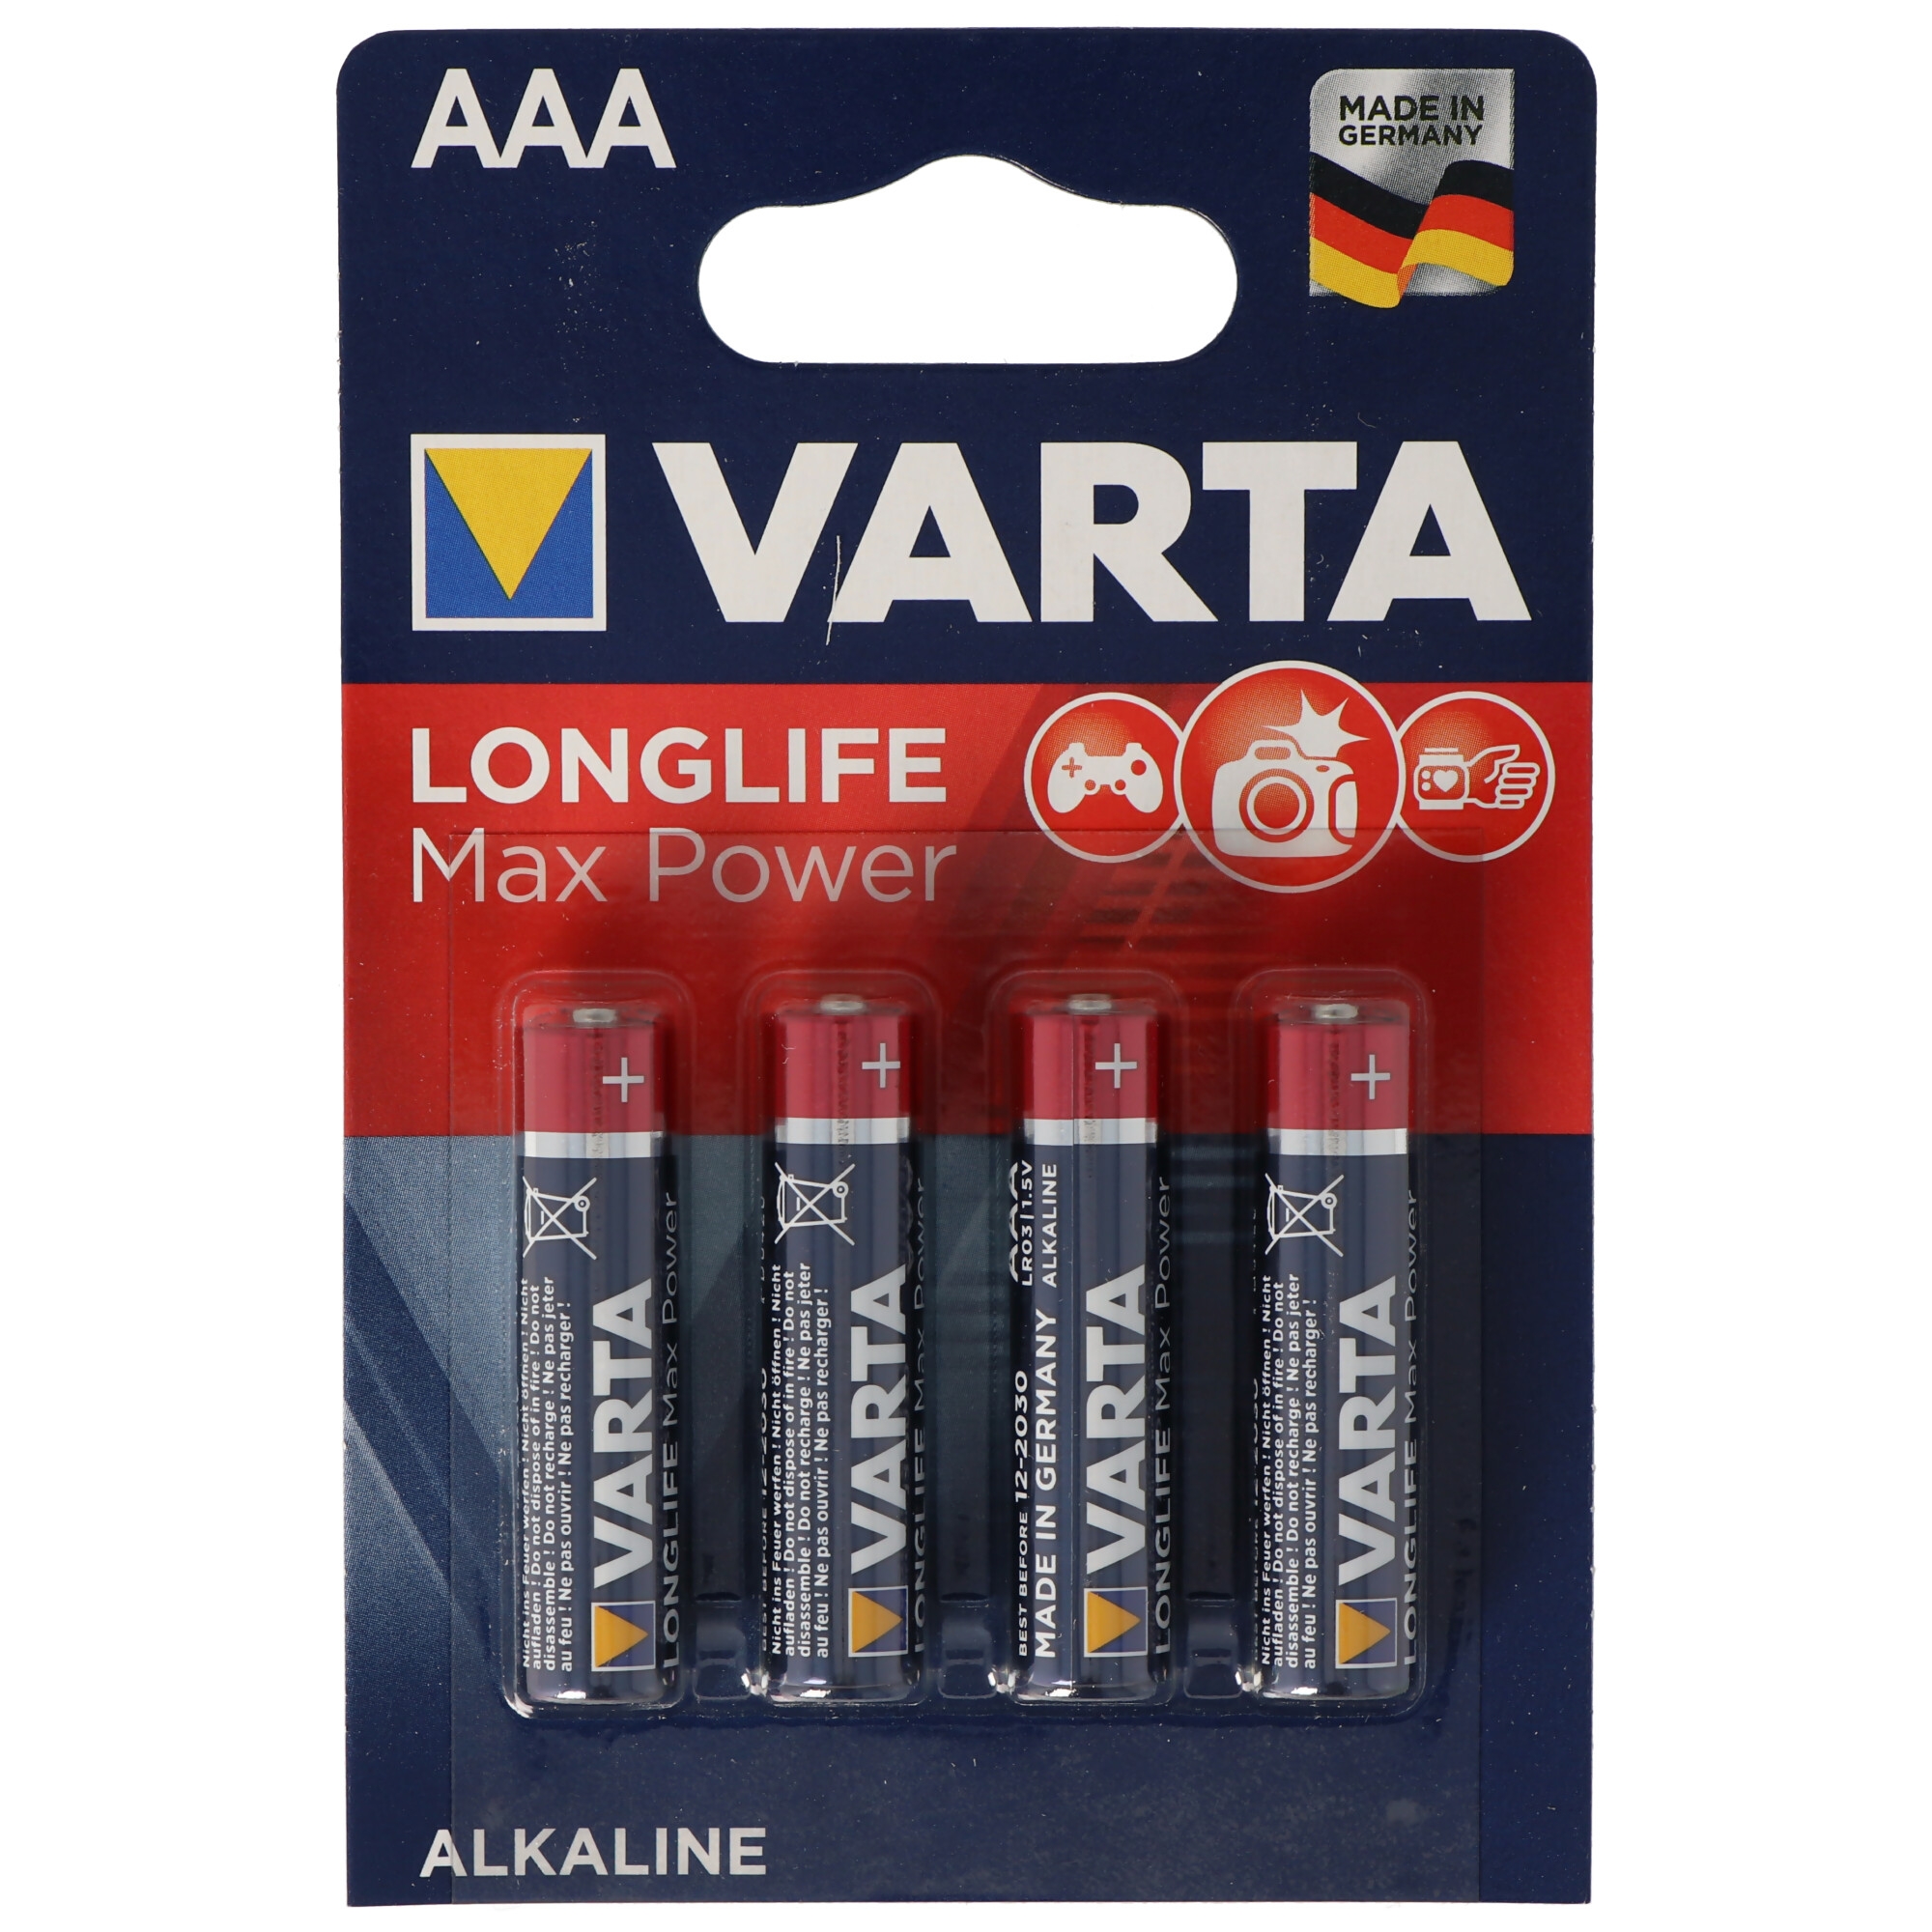 Varta Longlife Max Power AAA 4er-Blister